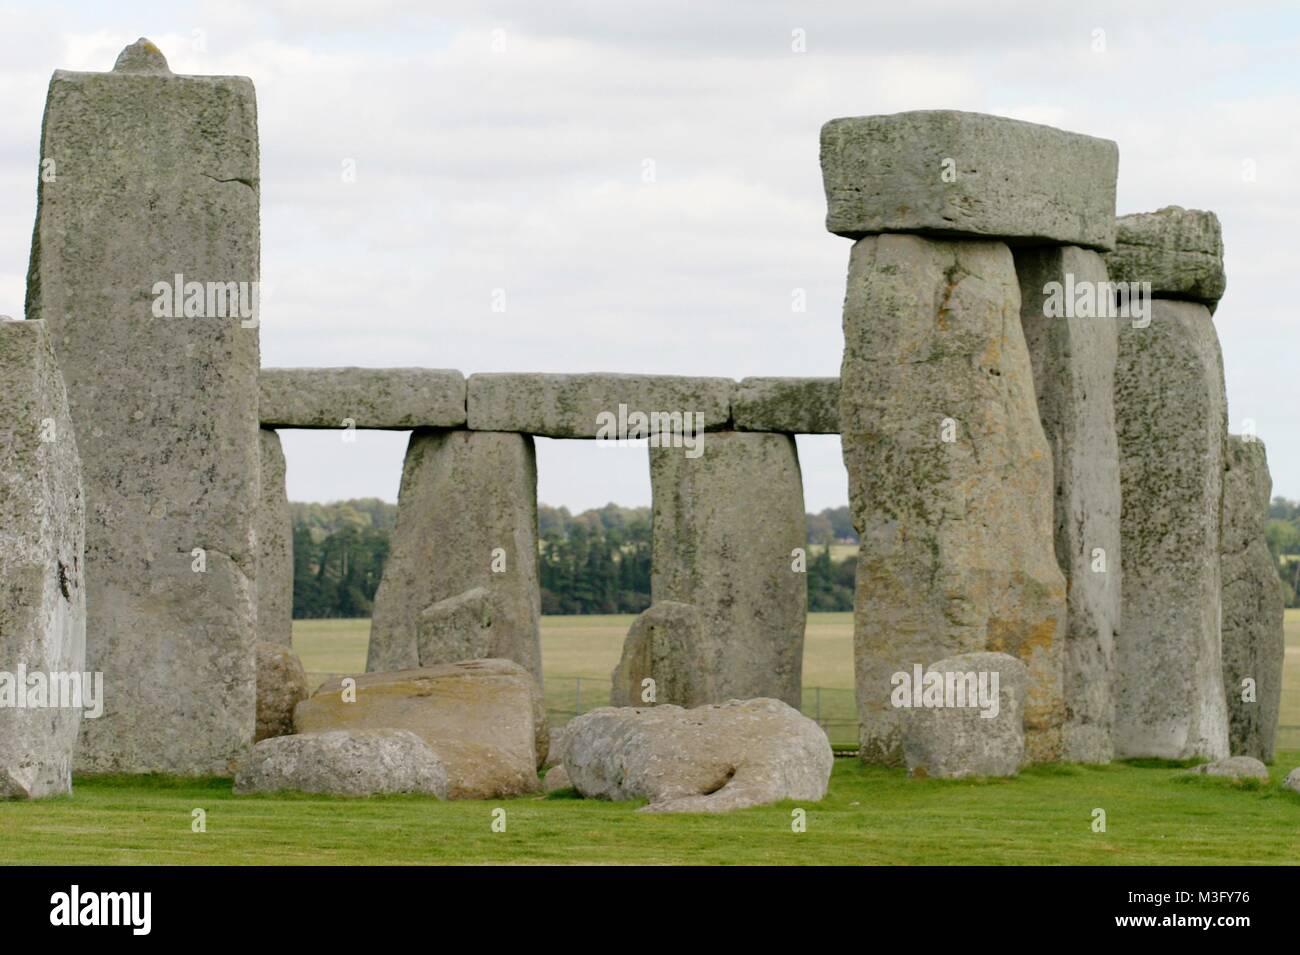 STONEHENGE, Stonehenge ist ein in der Jungsteinzeit begründetes und mindestens bis in die Bronzezeit benutztes Bauwerk in der Nähe von Amesbury in Wiltshire, England, etwa 13 Kilometer nordwestlich von Salisbury. Es besteht aus einer Grabenanlage, die eine Megalithstruktur umgibt, welche wiederum aus mehreren konzentrischen Steinkreisen gebildet wird. Stock Photo